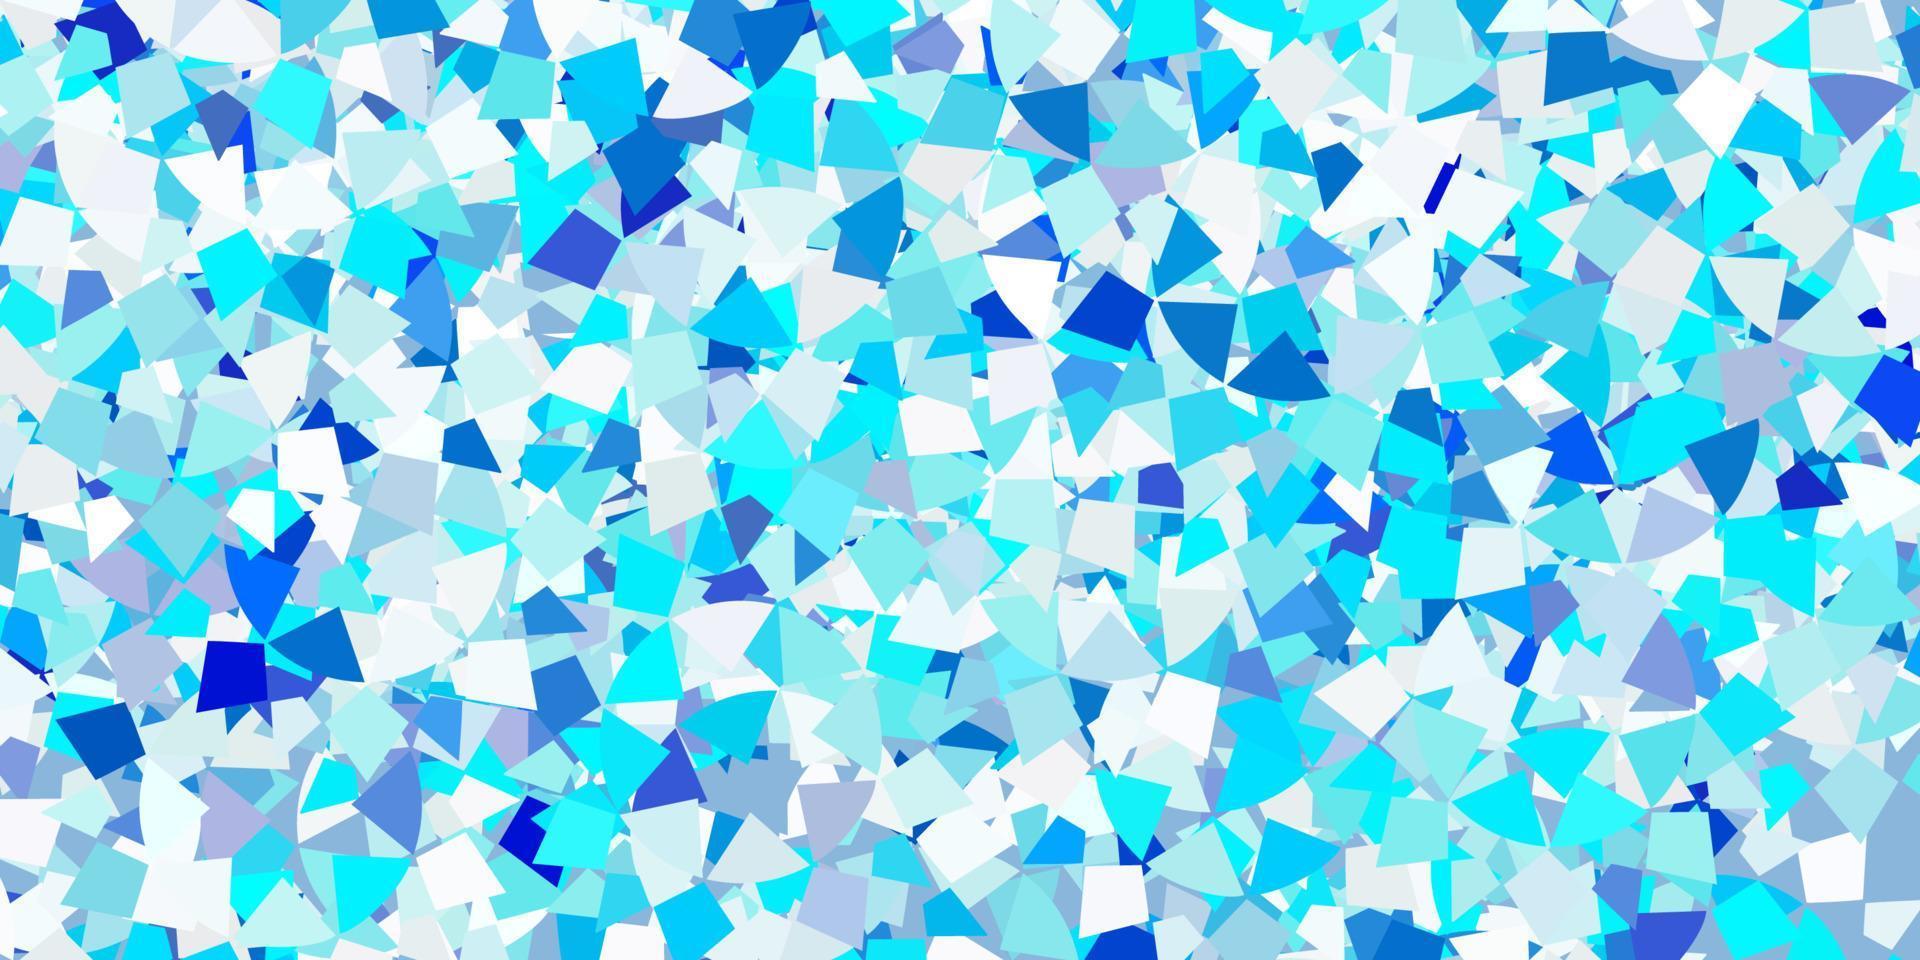 textura de vector azul claro con estilo triangular.